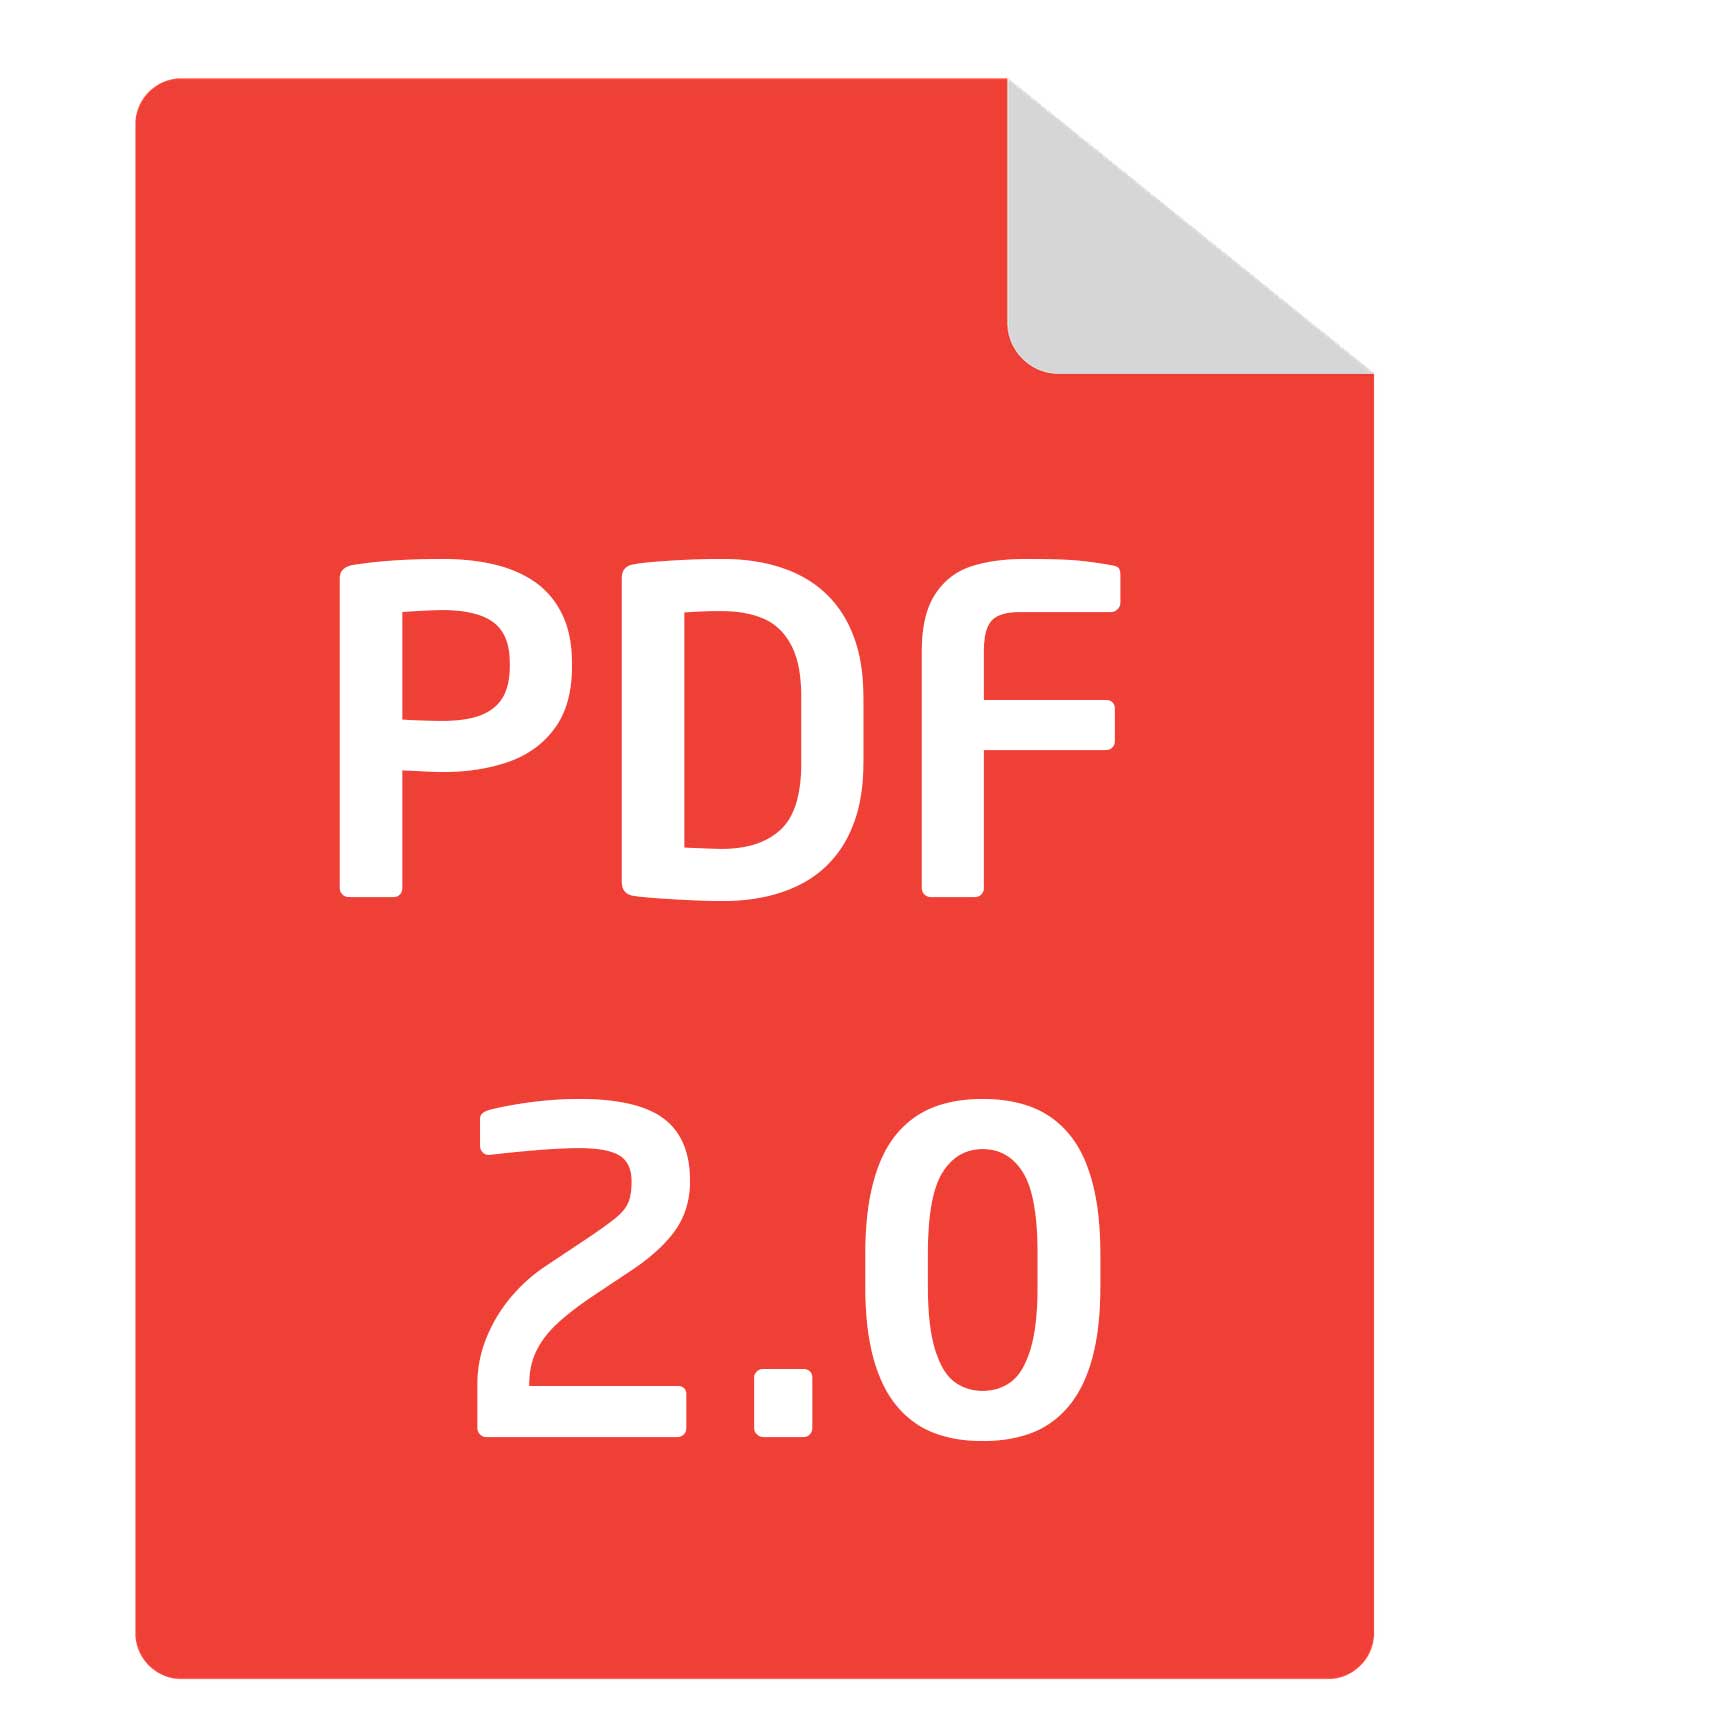 PDF 2.0 standarts: jaunais PDF failu standarts